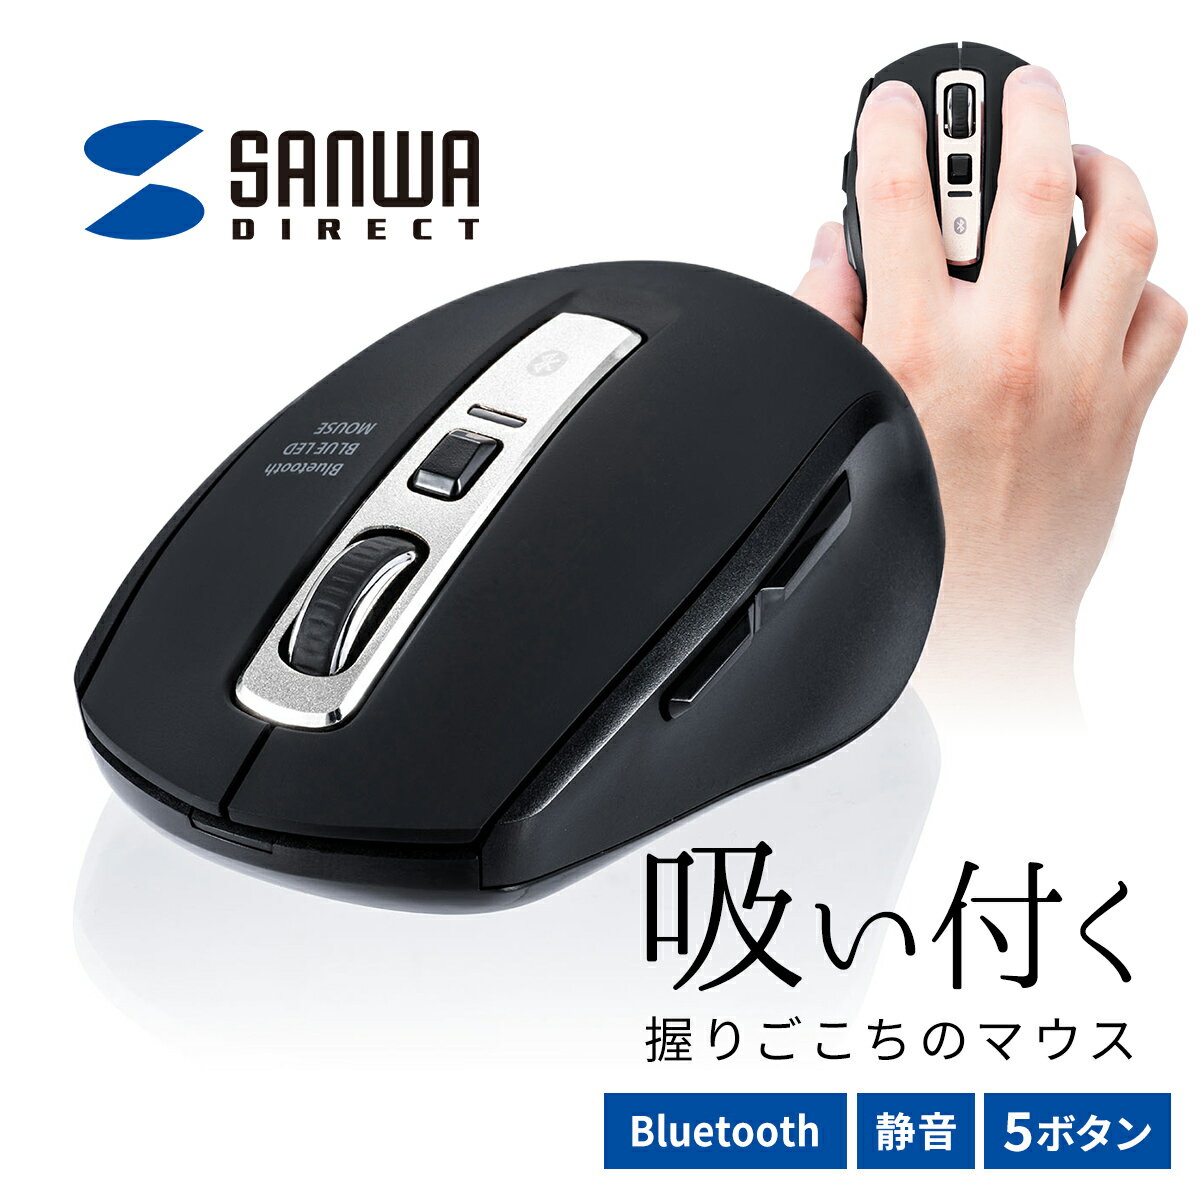 マウス ワイヤレス 無線 Bluetooth ワイヤレスマウス ブルートゥース 静音 ブルーLEDマウス 5ボタン 静音ボタン DPI切替 カウント数切り替え 800/1200/1600 多ボタンマウス